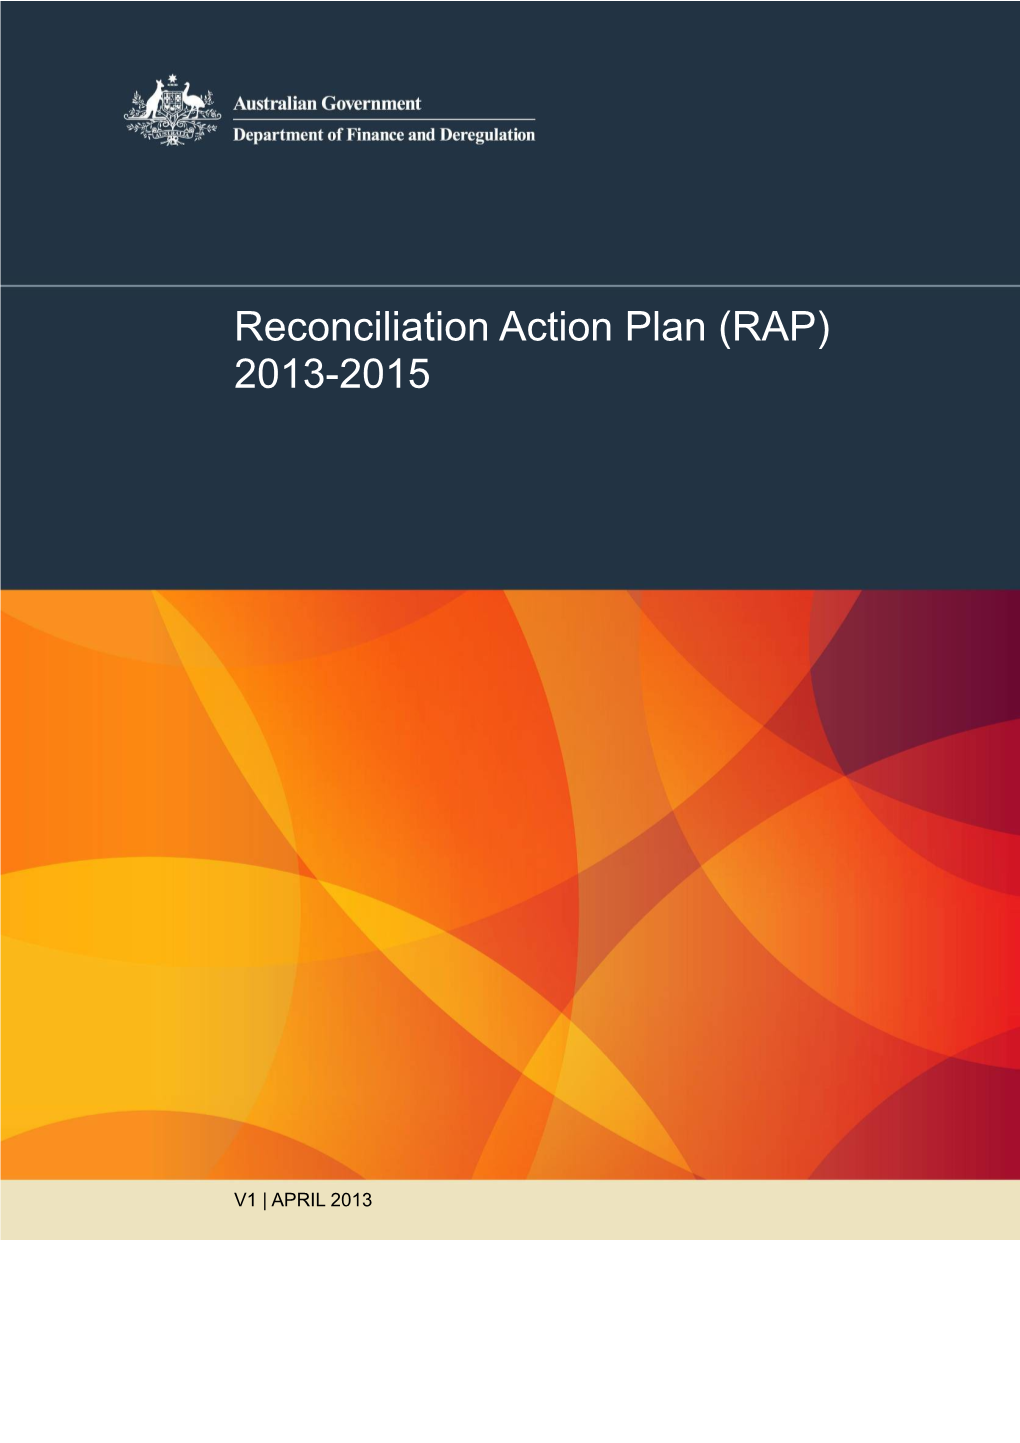 Reconciliation Action Plan (RAP) 2013-2015